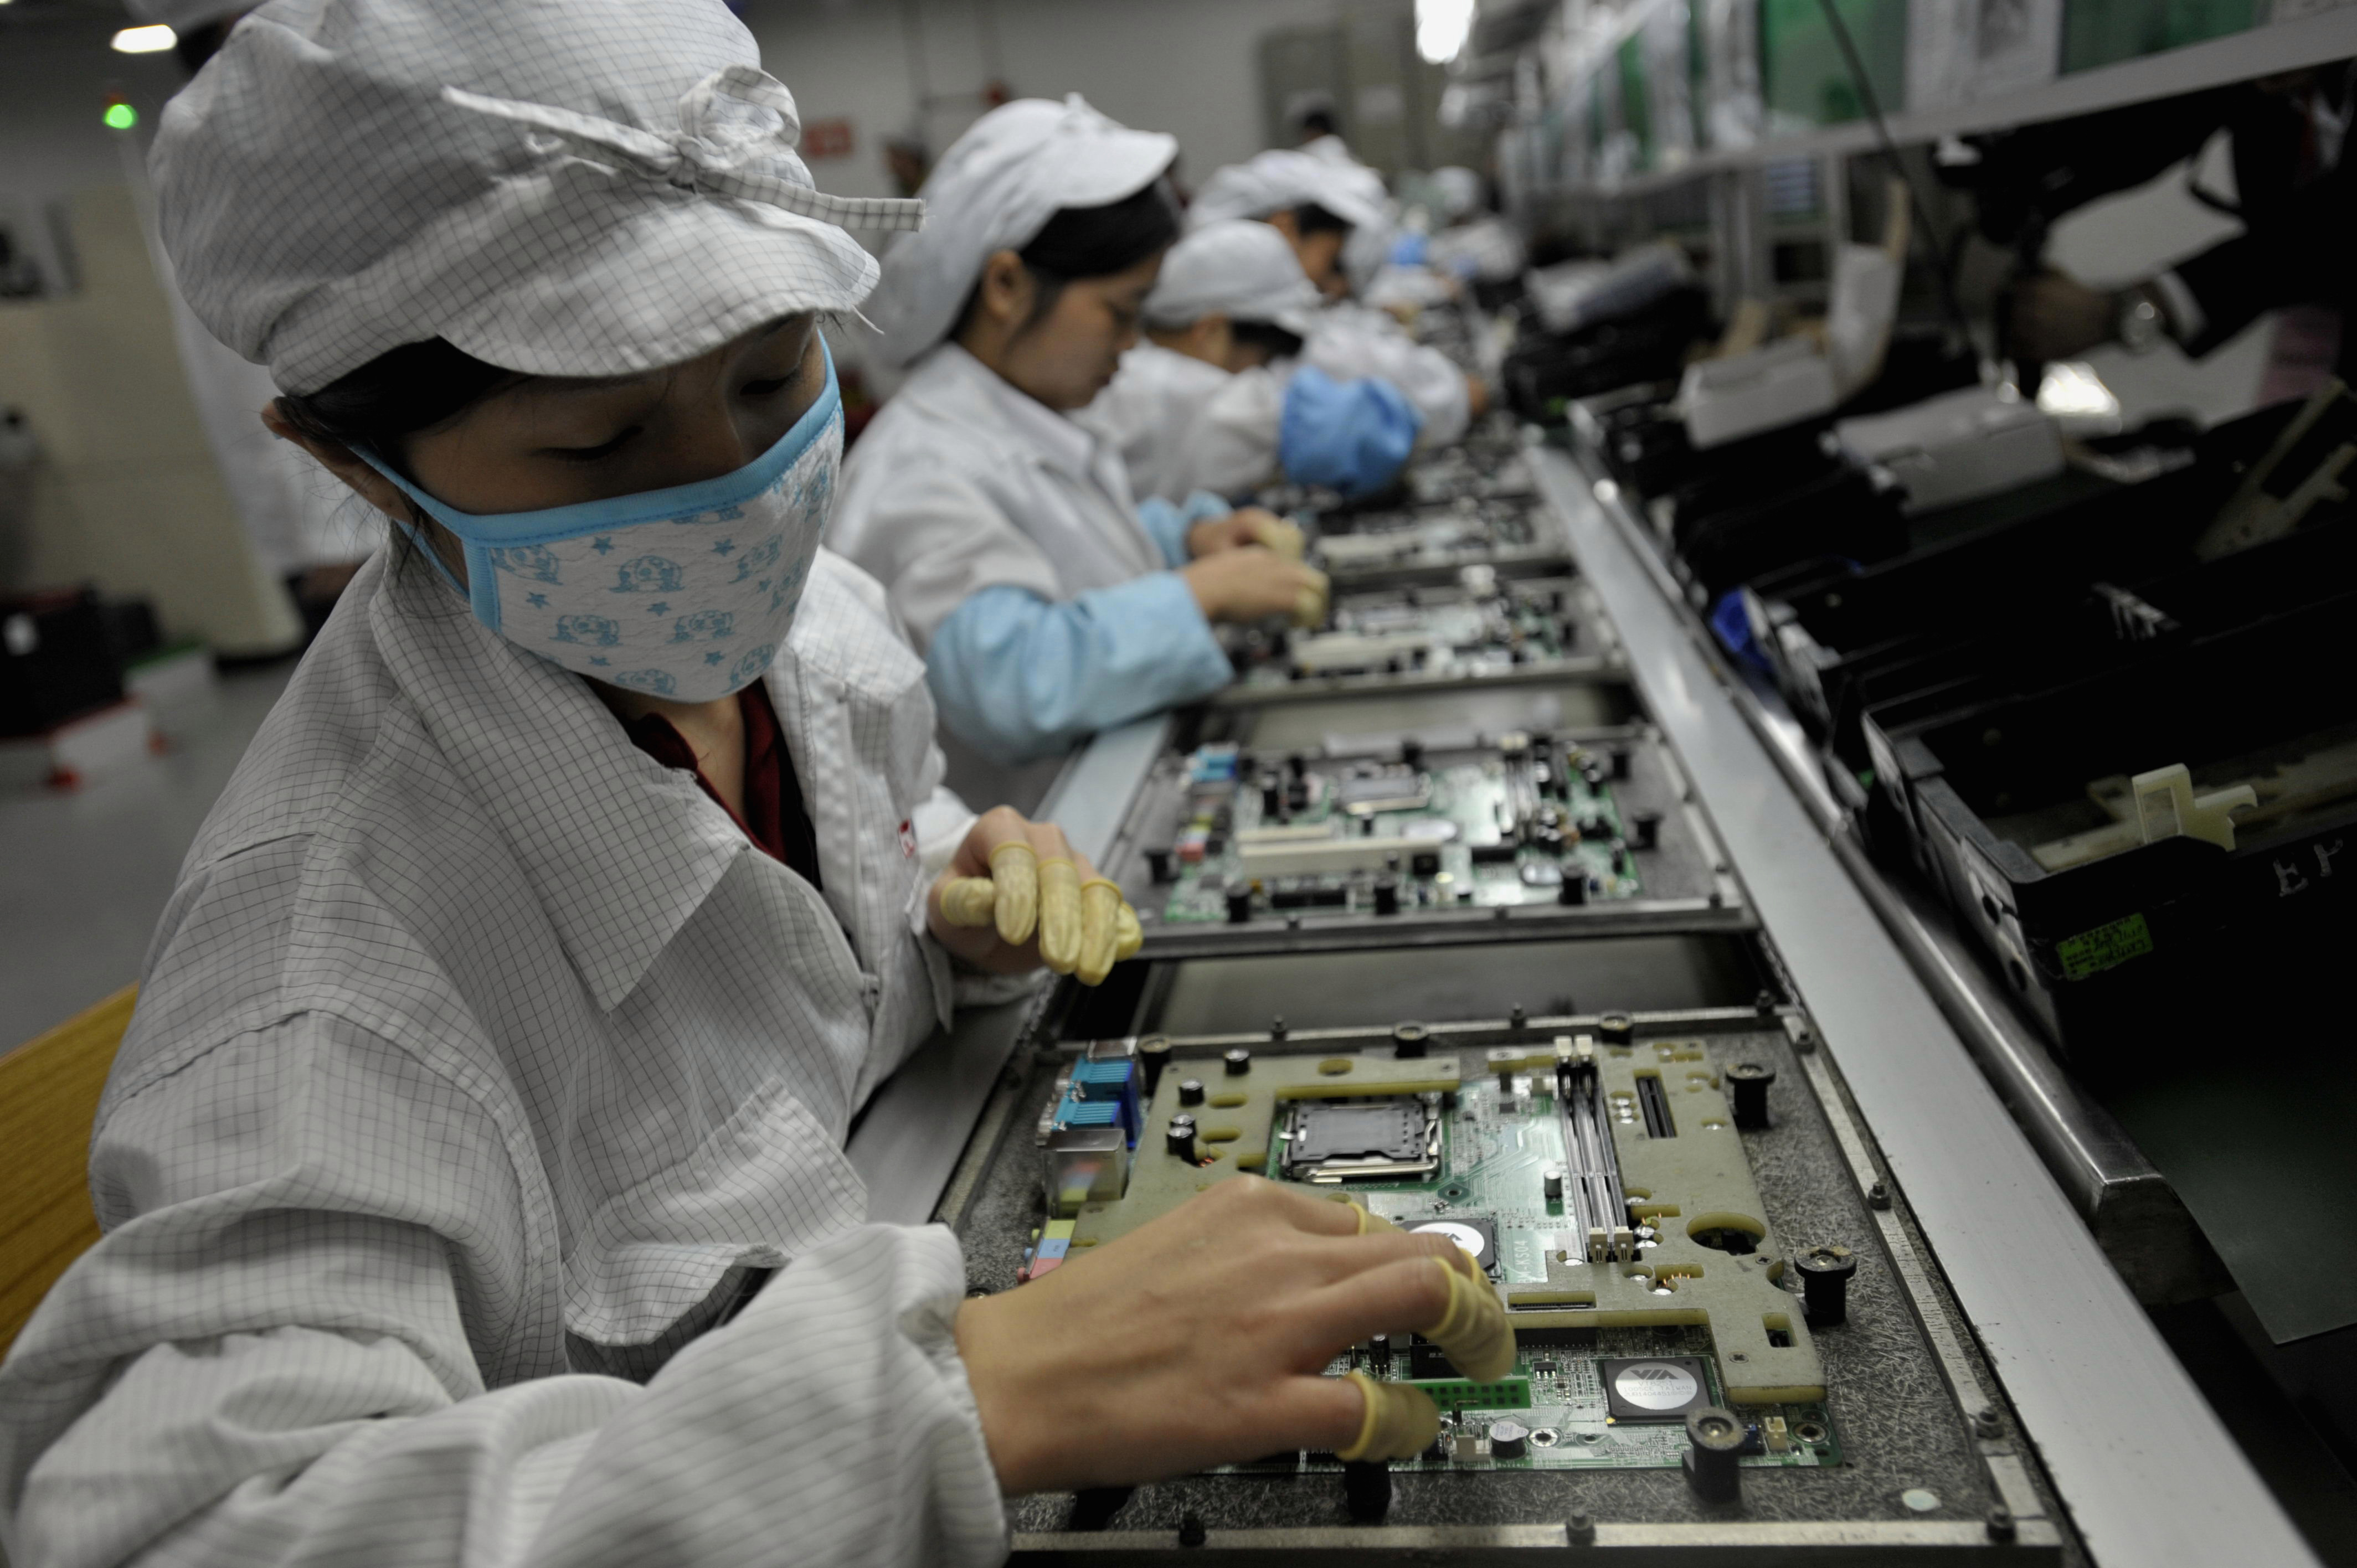         Công nhân tại nhà máy Foxconn ở Trung Quốc. Theo báo cáo, một tổ chức từ thiện đã thực hiện 